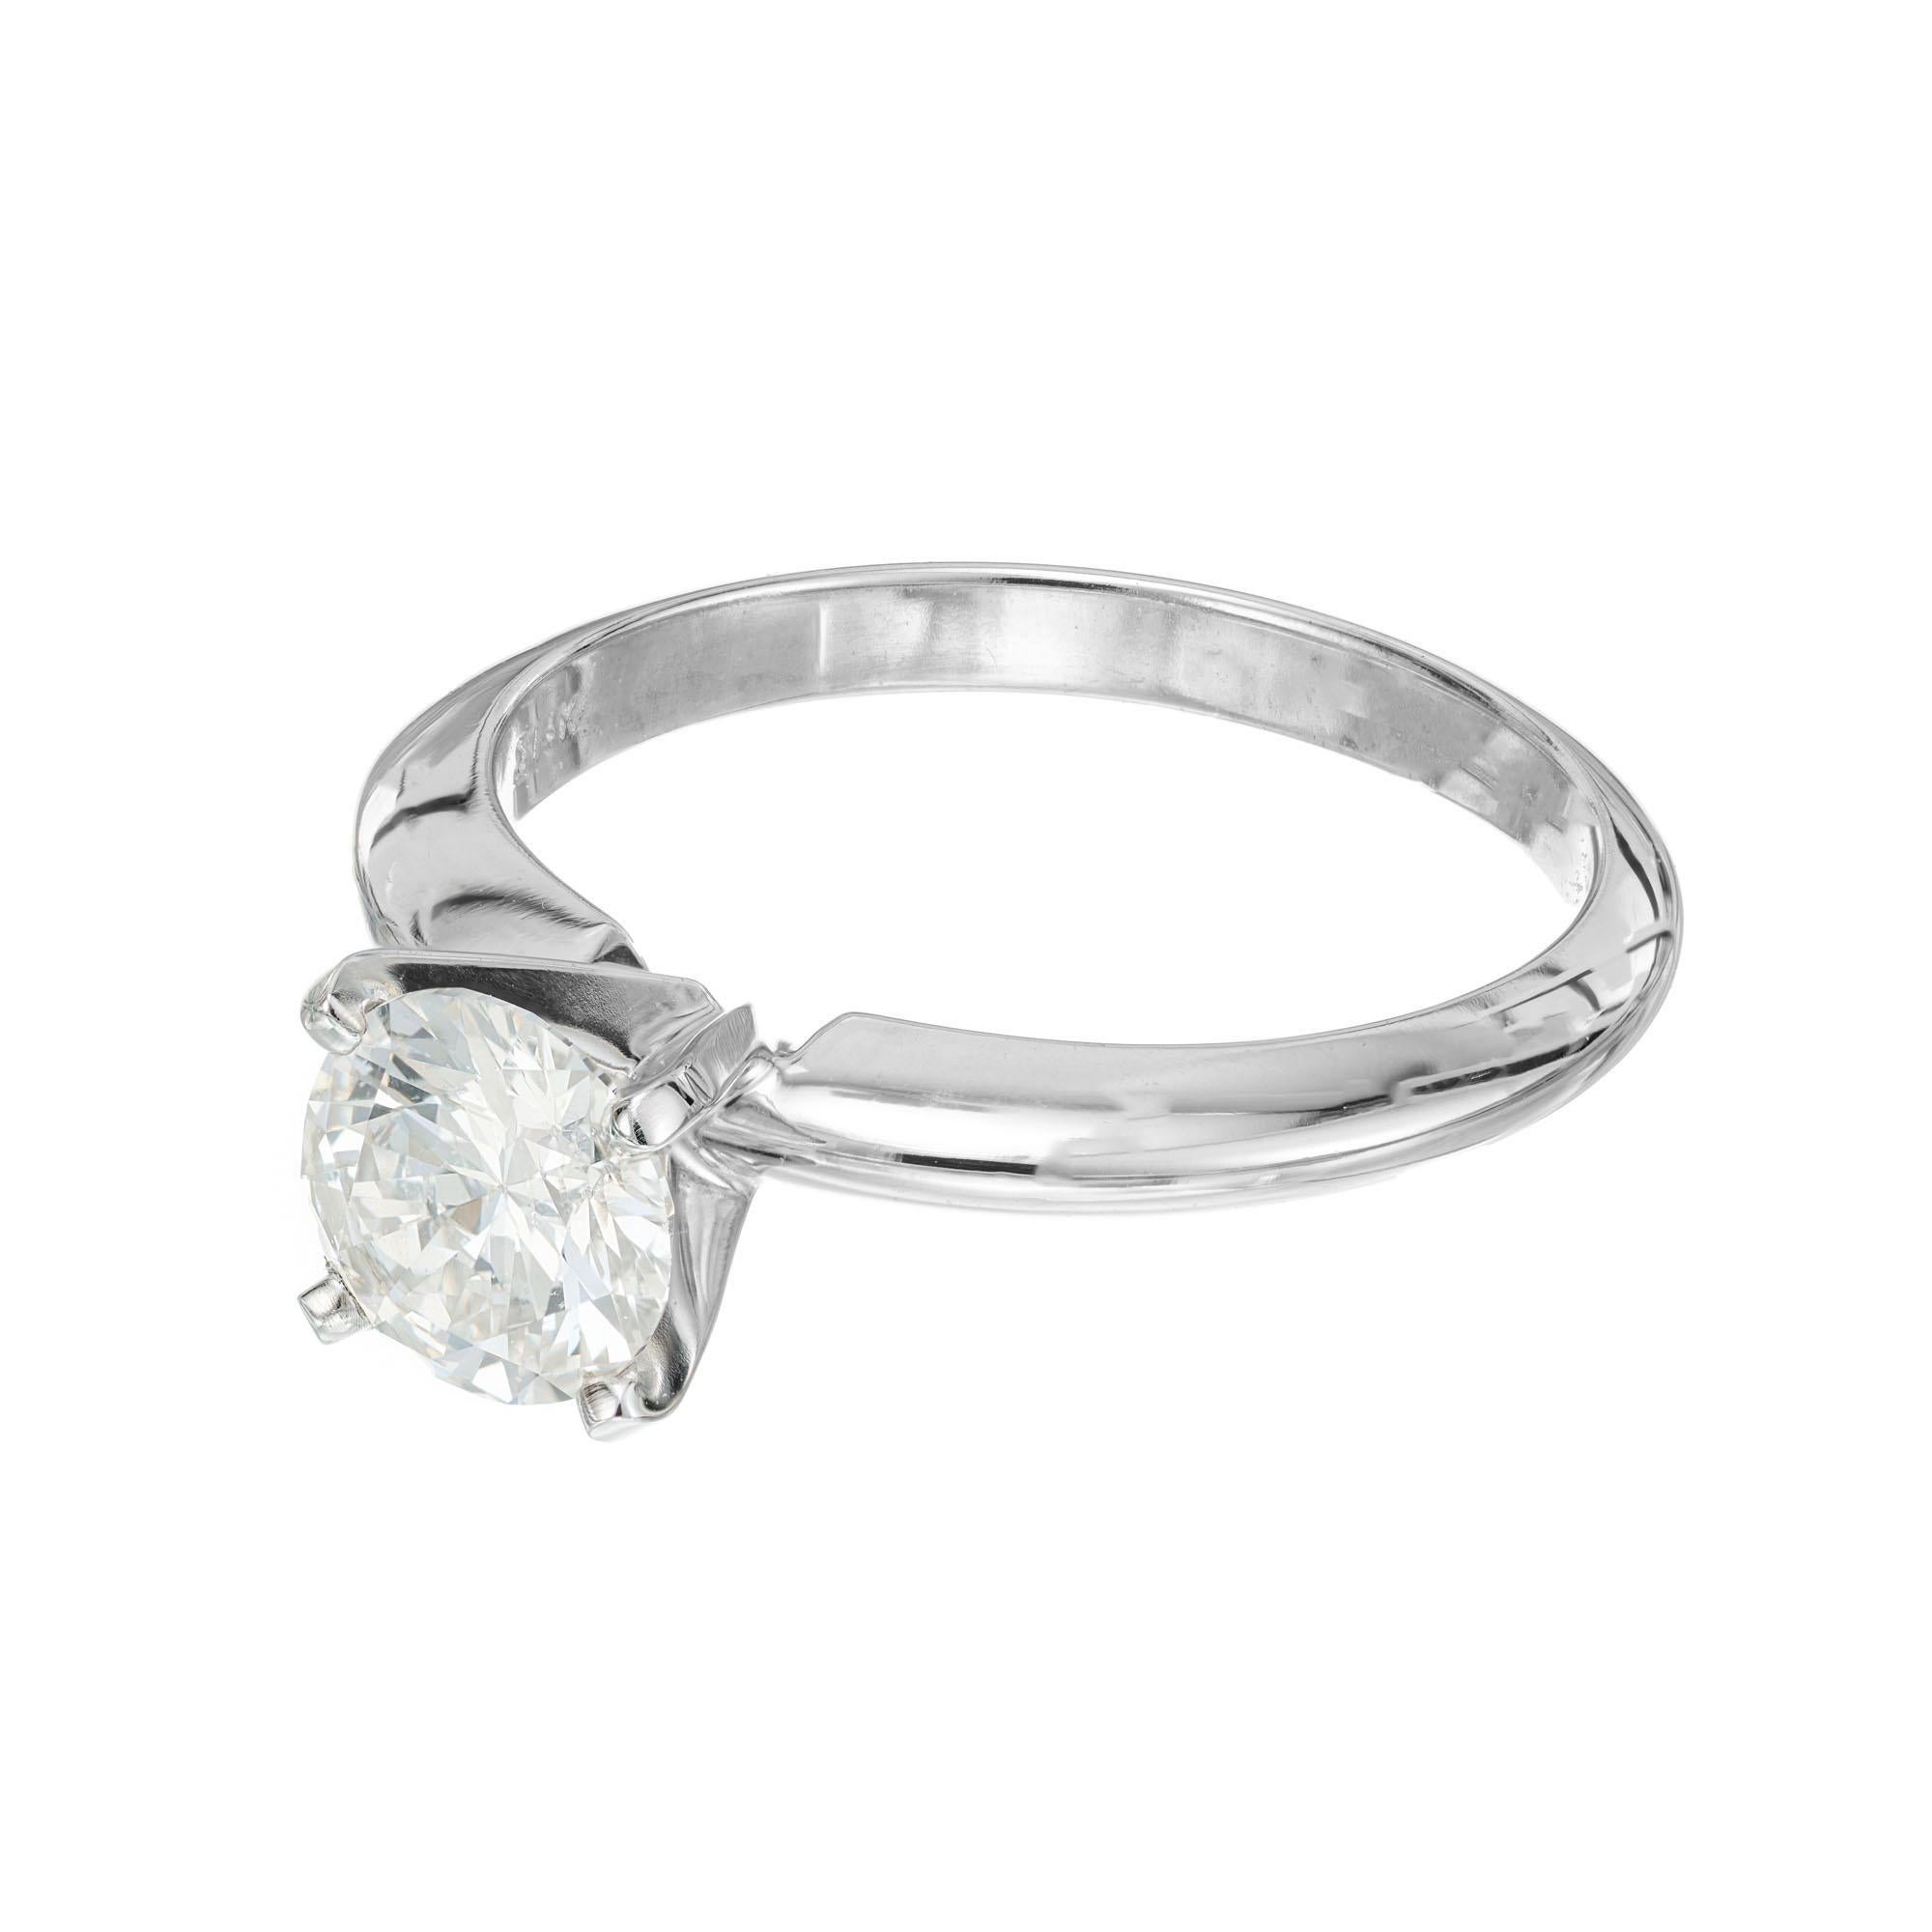 .91 carat diamond price